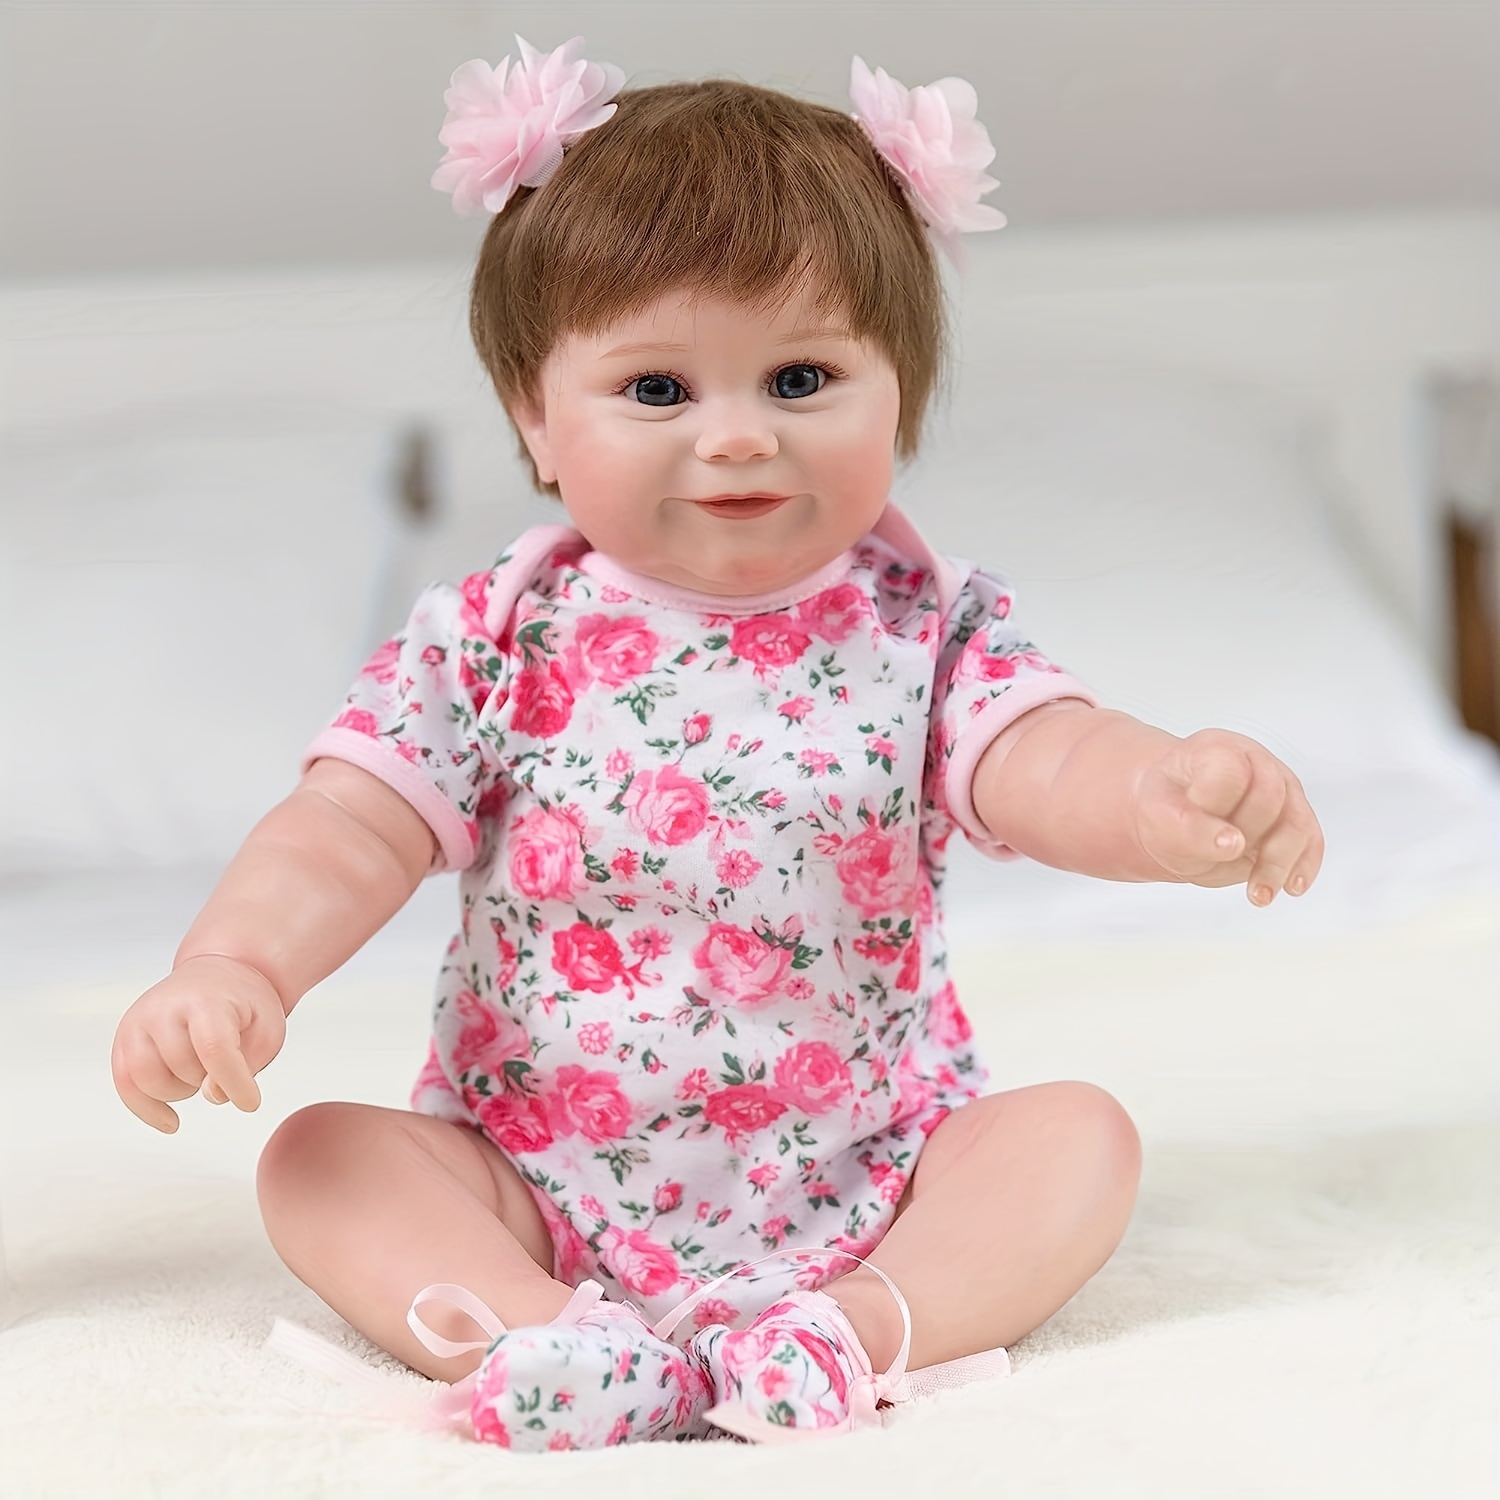 Bebê reborn realista - PROMOÇÃO DE NATAL - Artigos infantis